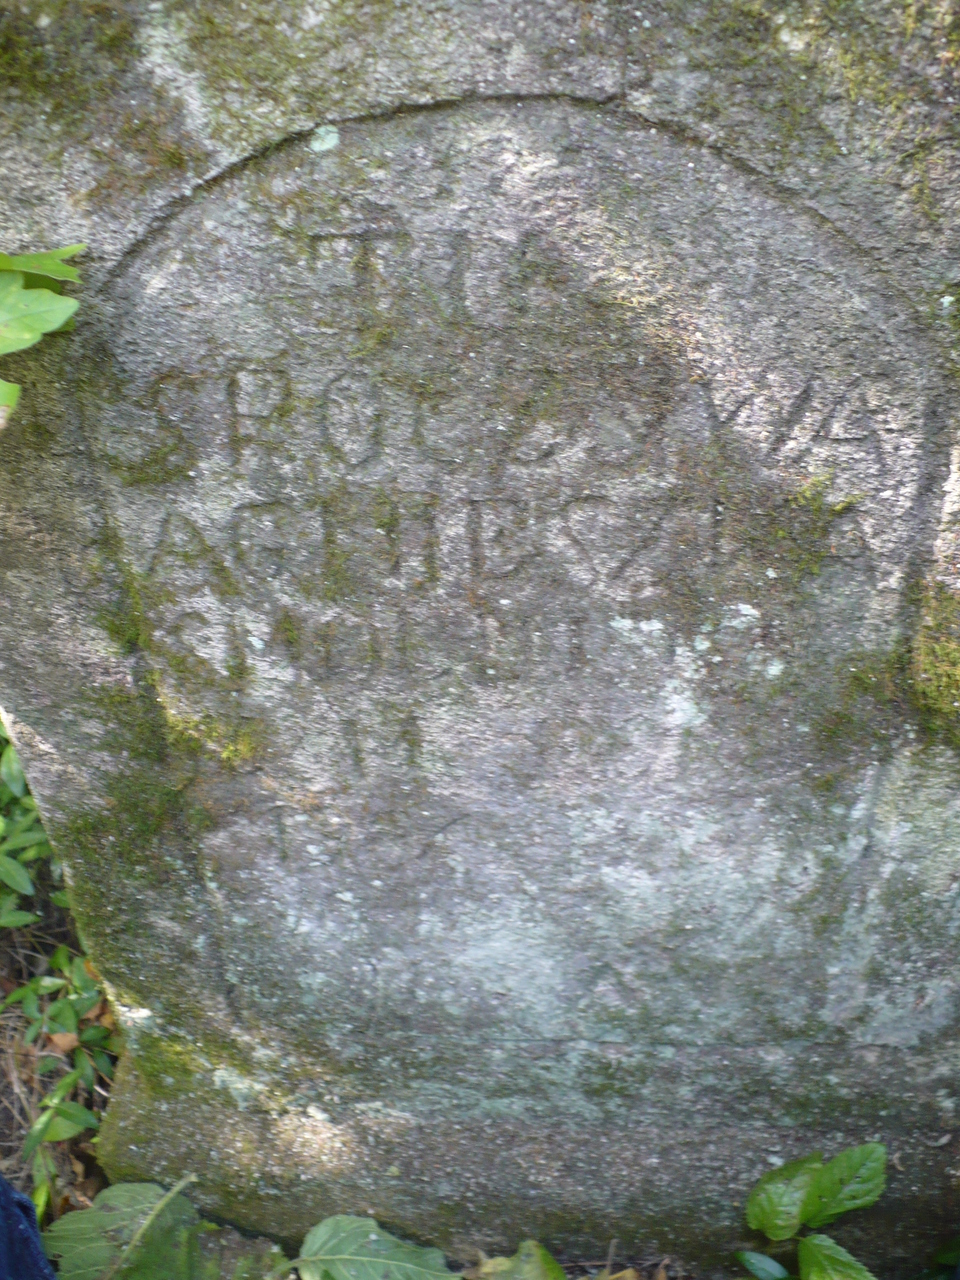 Tombstone of Agnieszka Smolinska, Czerwonogrod (Nyrkiv) cemetery, state from 2005